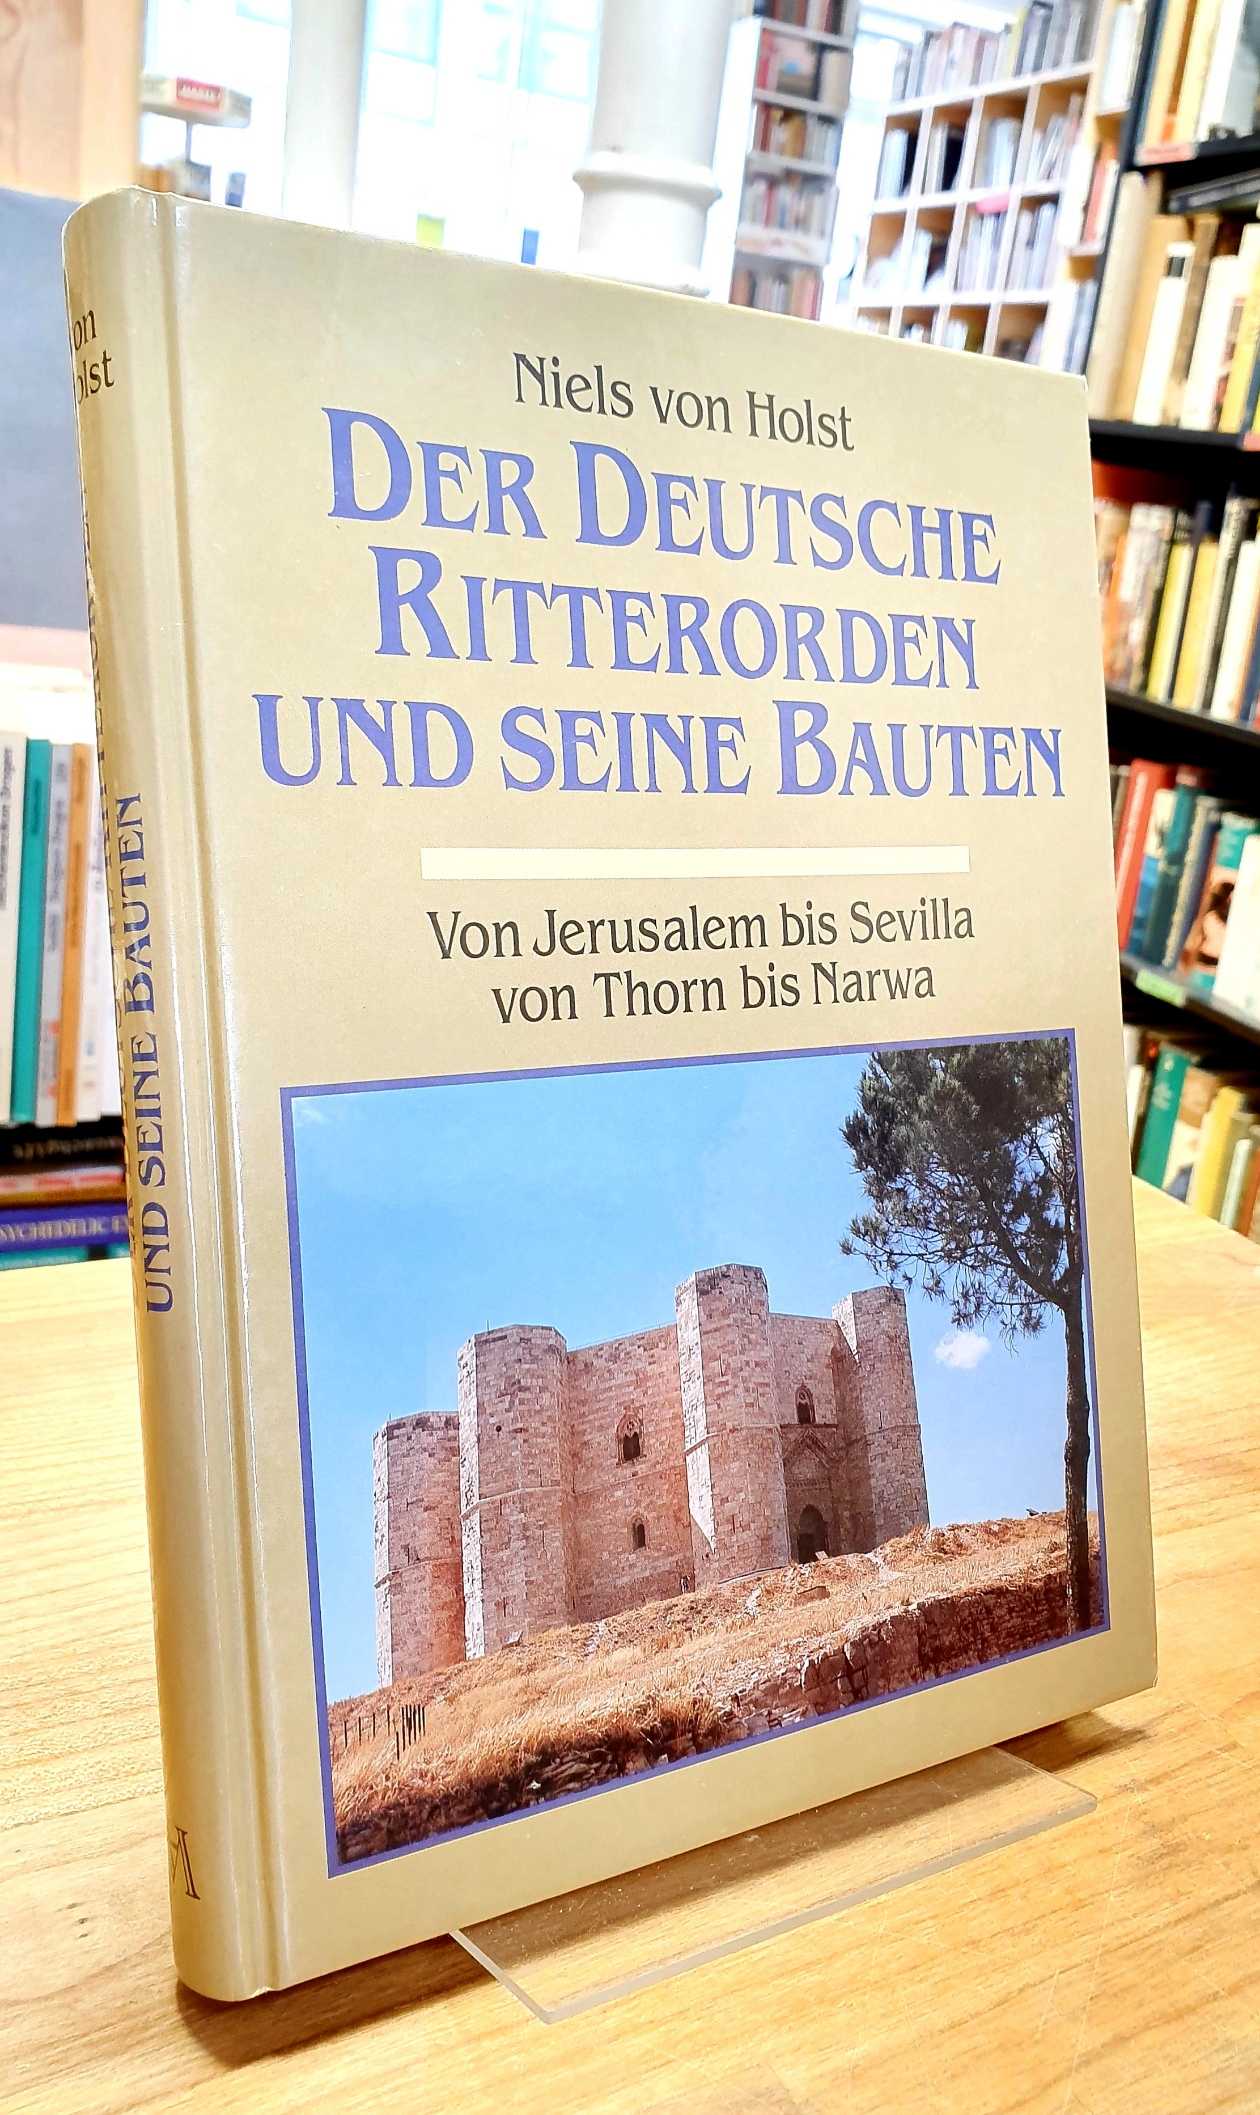 Holst, Der Deutsche Ritterorden und seine Bauten – Von Jerusalem bis Sevilla, vo